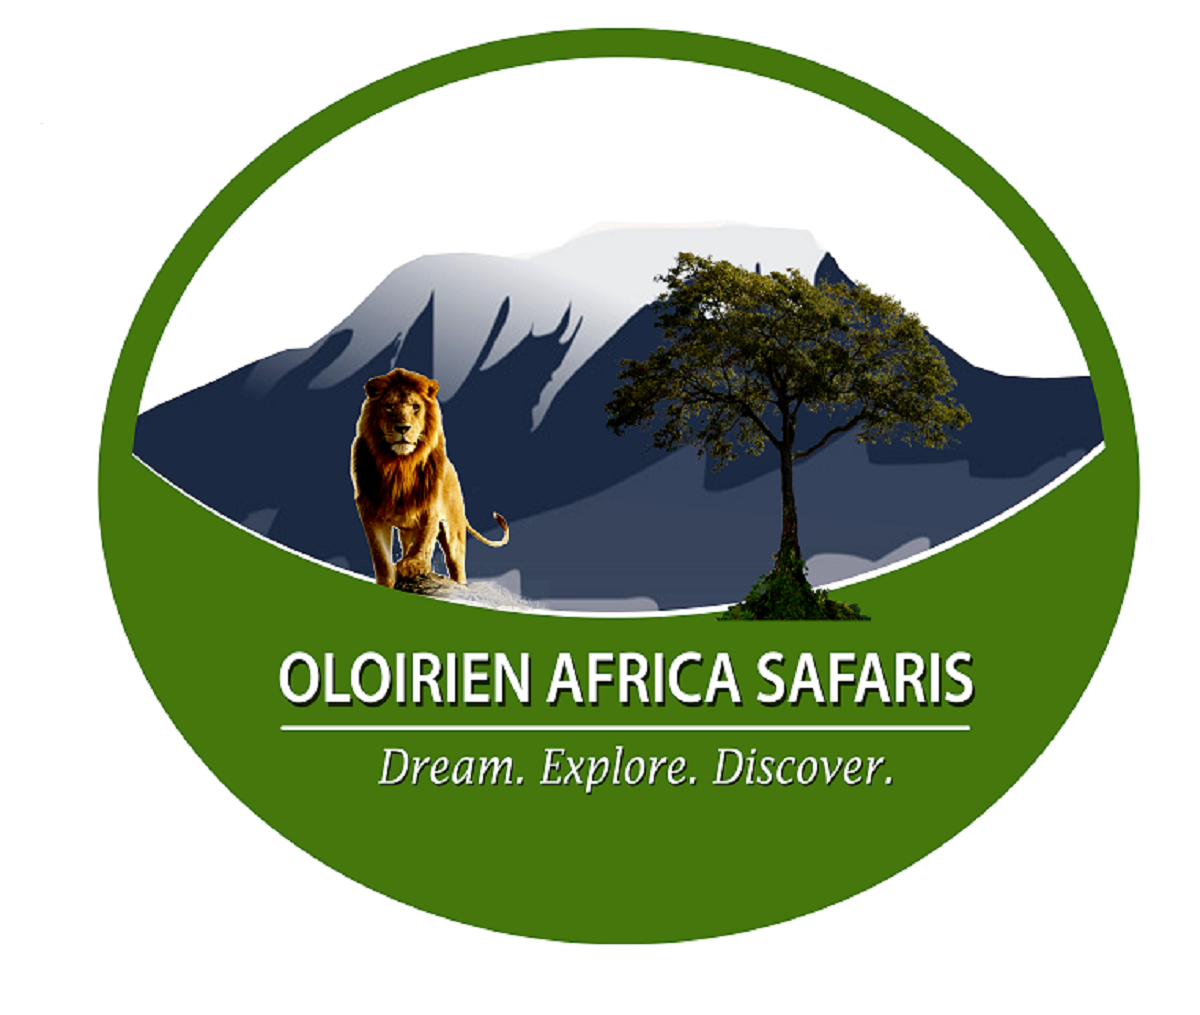 OLOIRIEN AFRICA SAFARIS